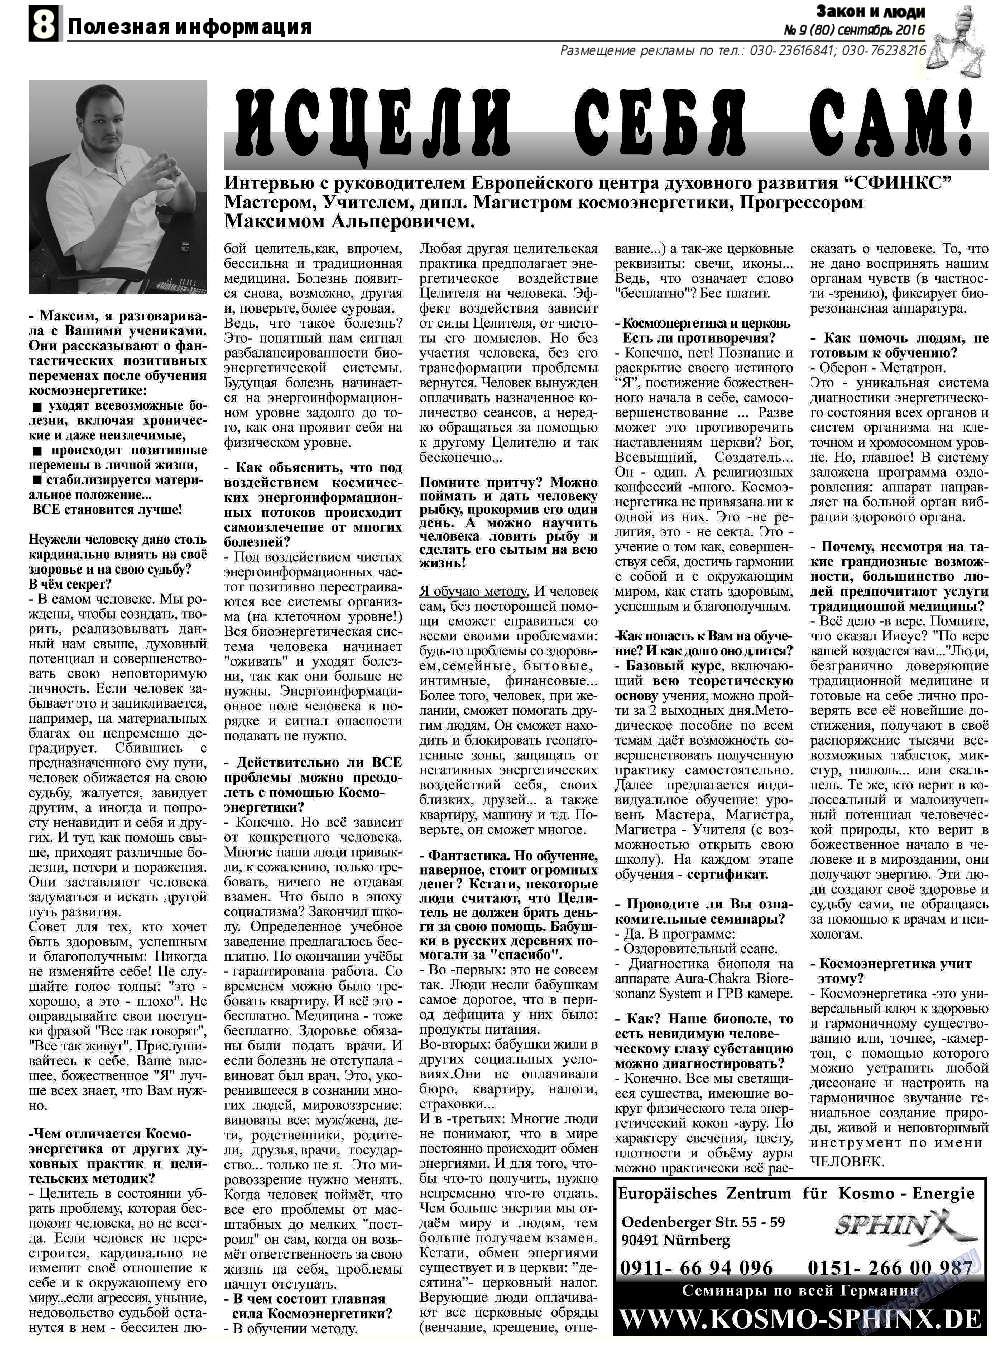 Закон и люди, газета. 2016 №9 стр.8